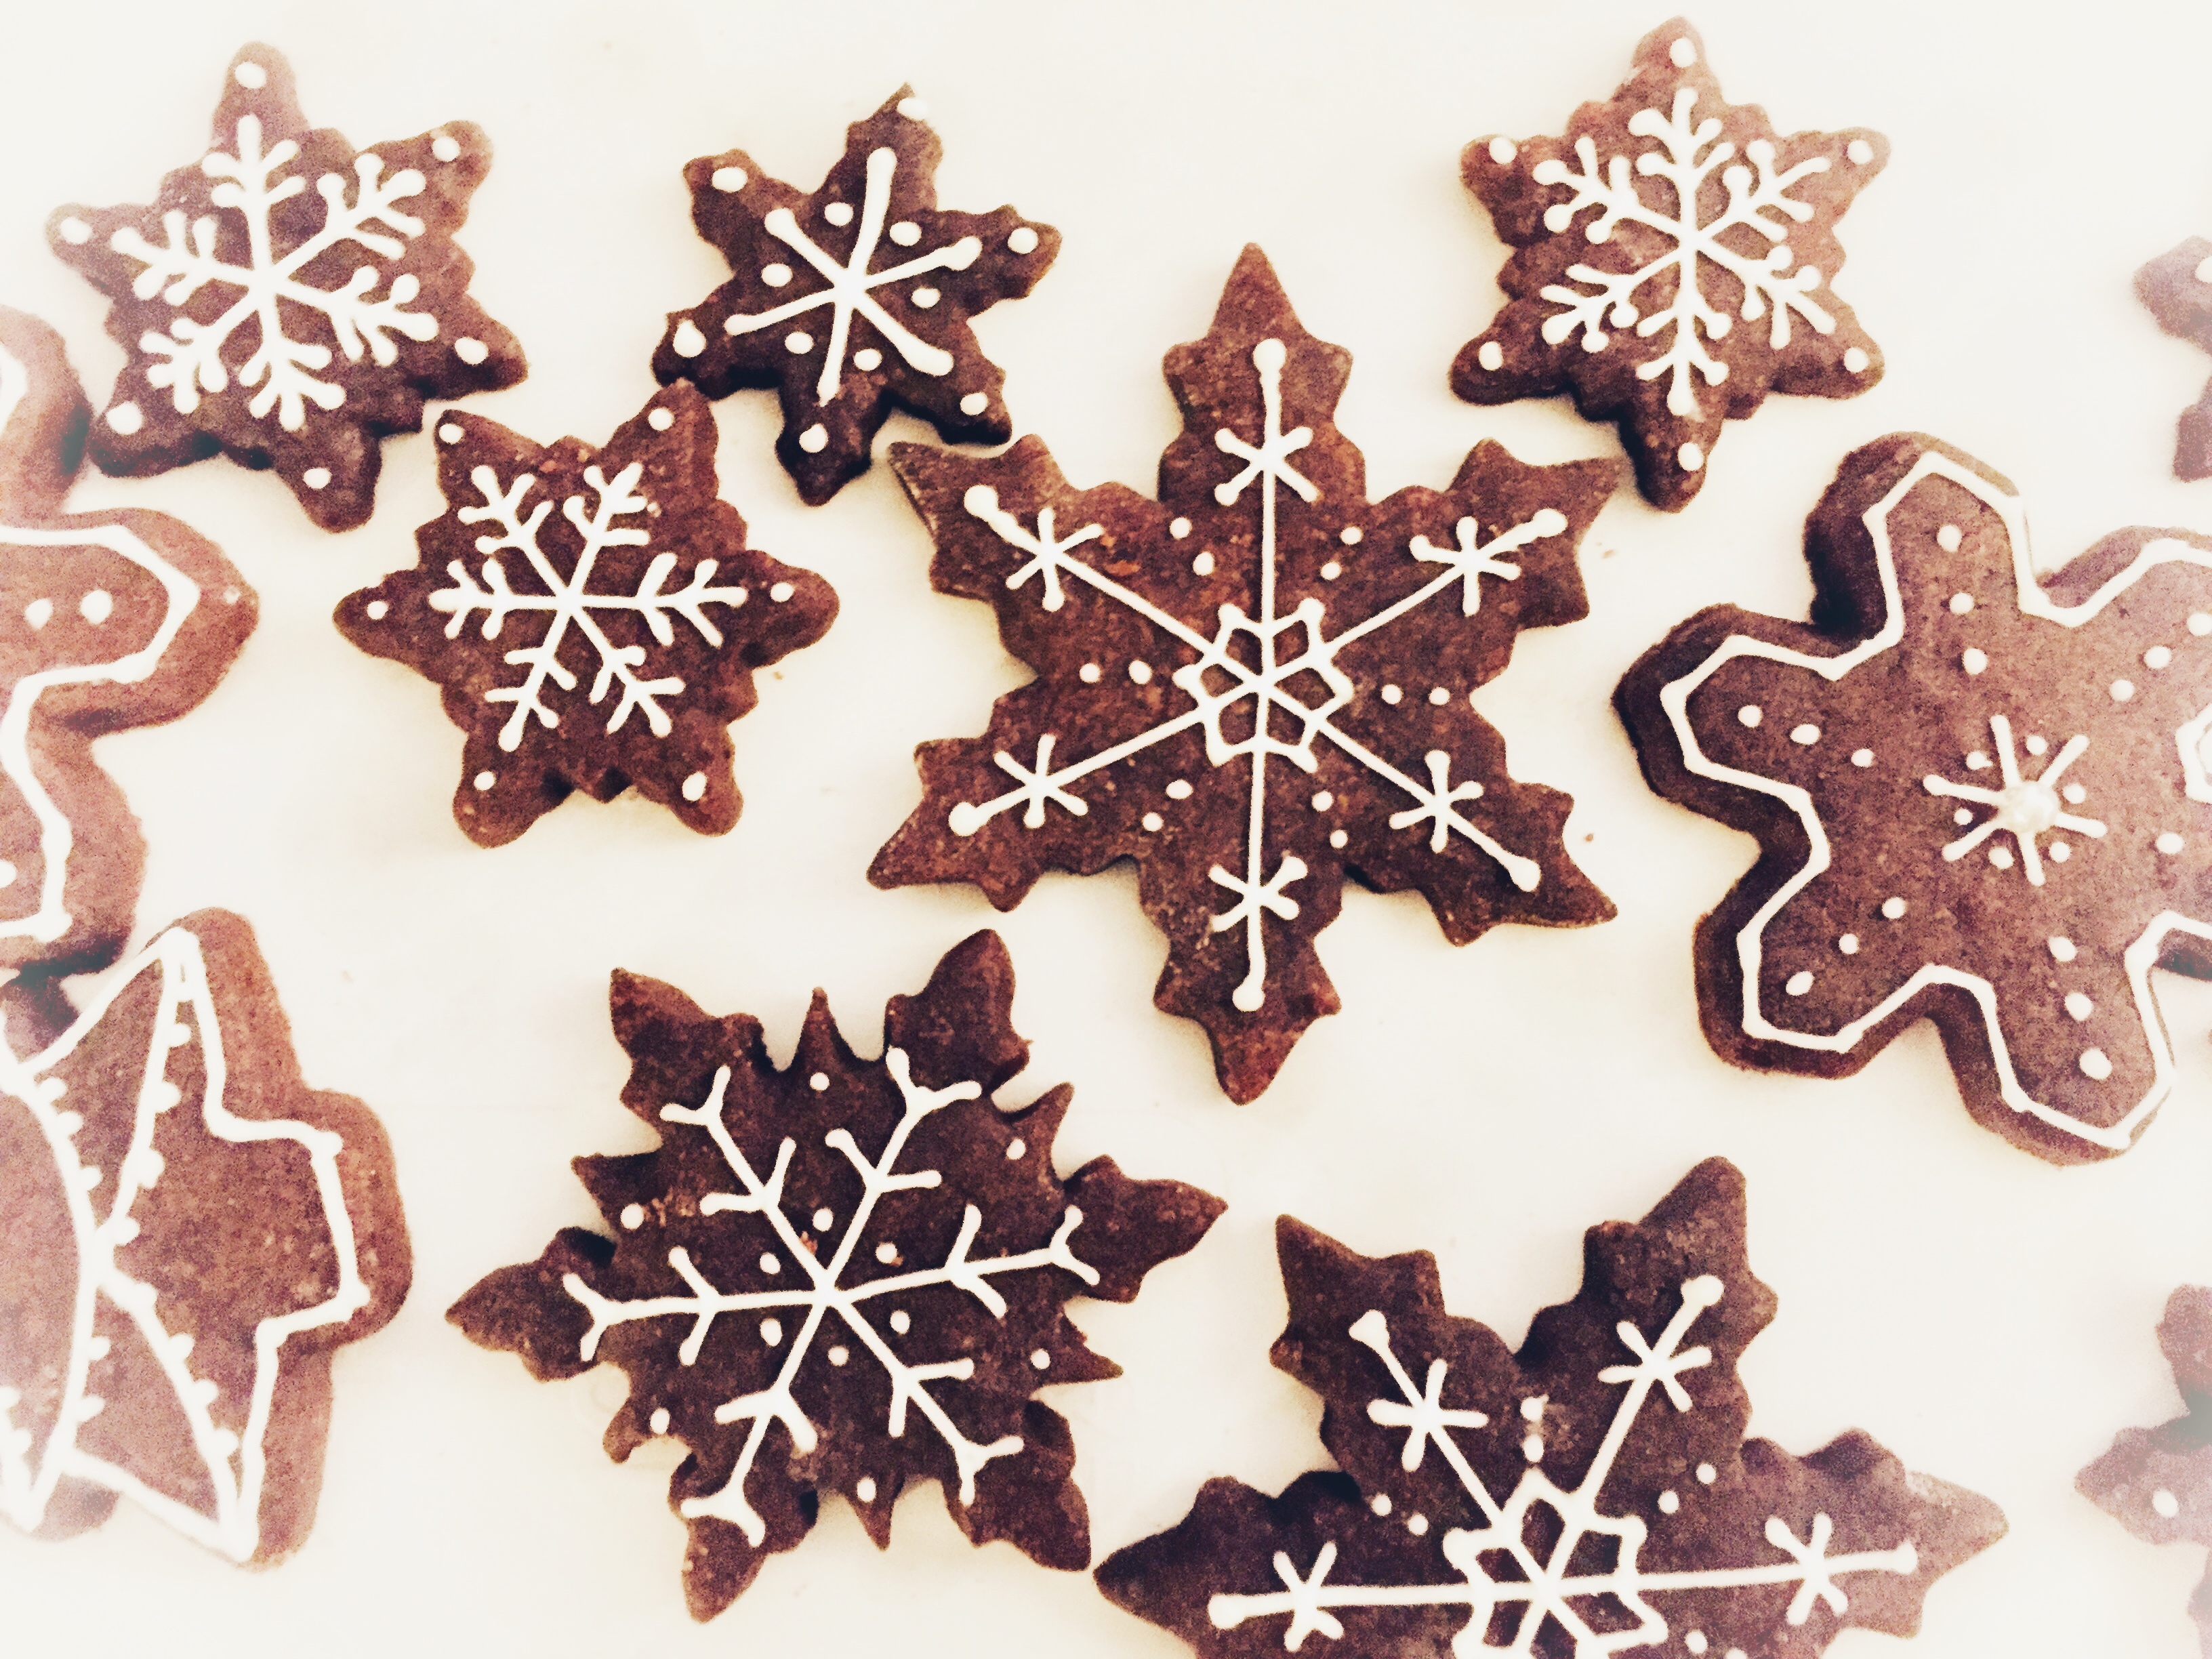 Decorare I Biscotti Di Natale.Biscotti Di Natale Sablee Al Cacao Decorati Con Ghiaccia Reale Master Of Cakes